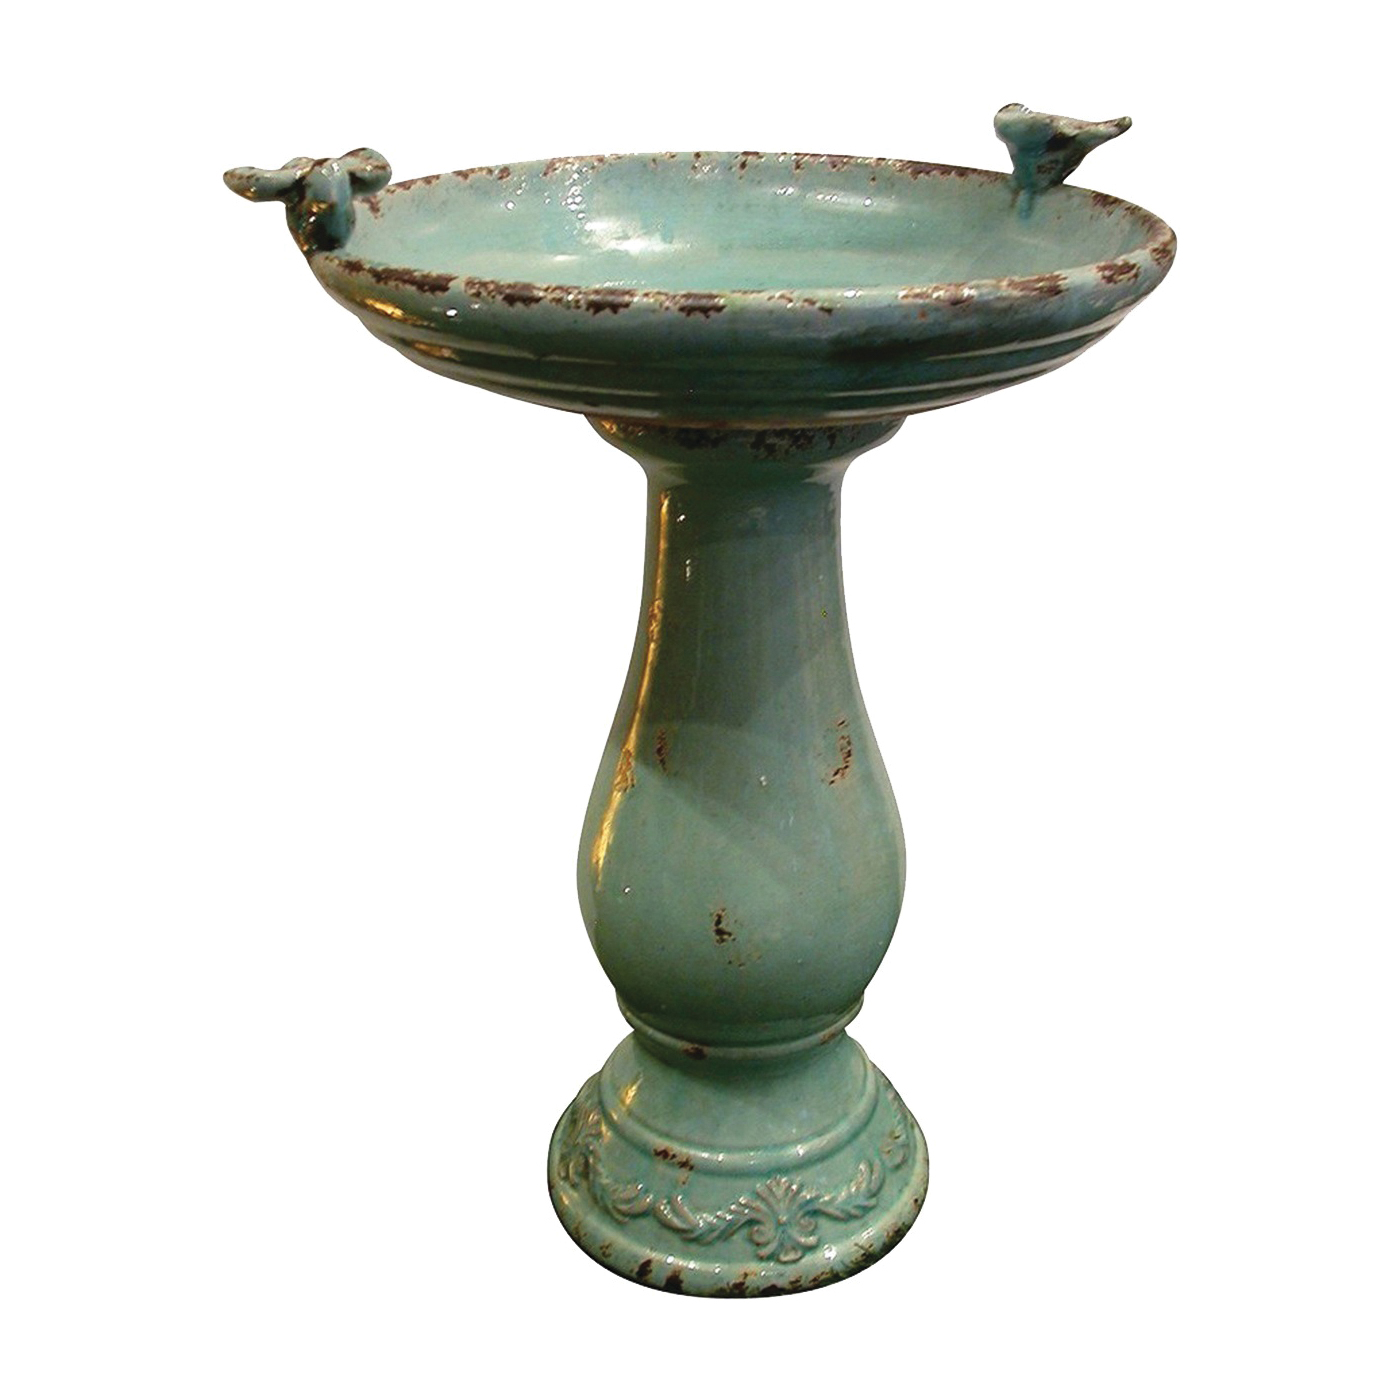 TLR102TUR Antique Ceramic Bird Bath, 1-Tier, Ceramic, Turquoise, Antique